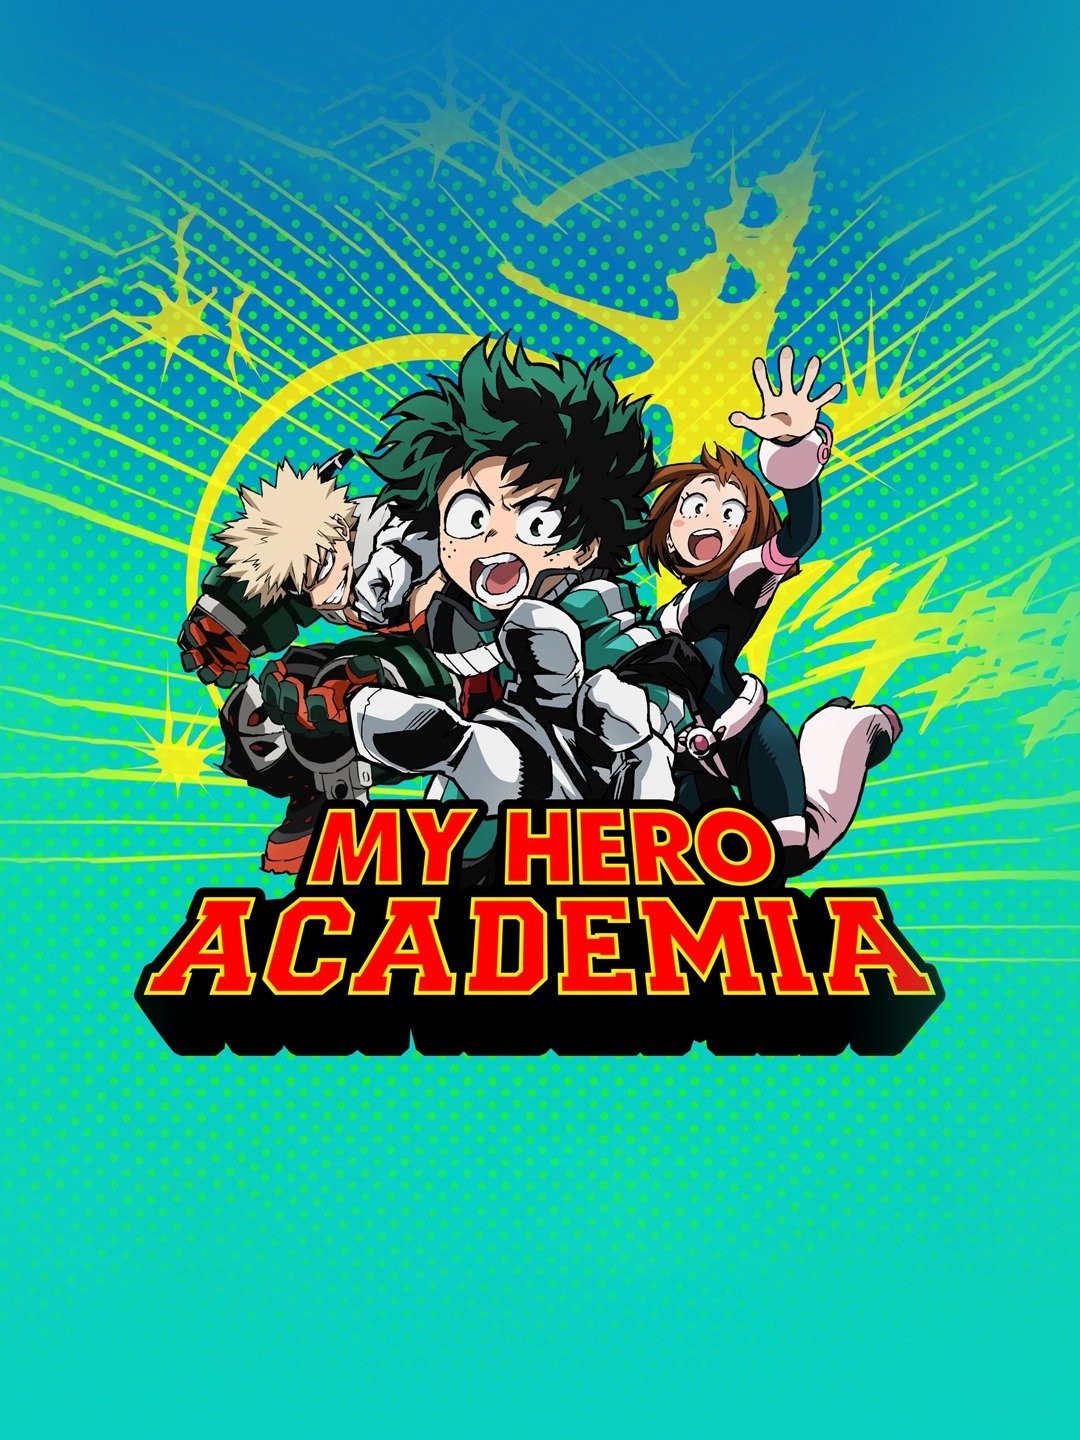 My Hero Academia: Two Heroes (2018) - IMDb